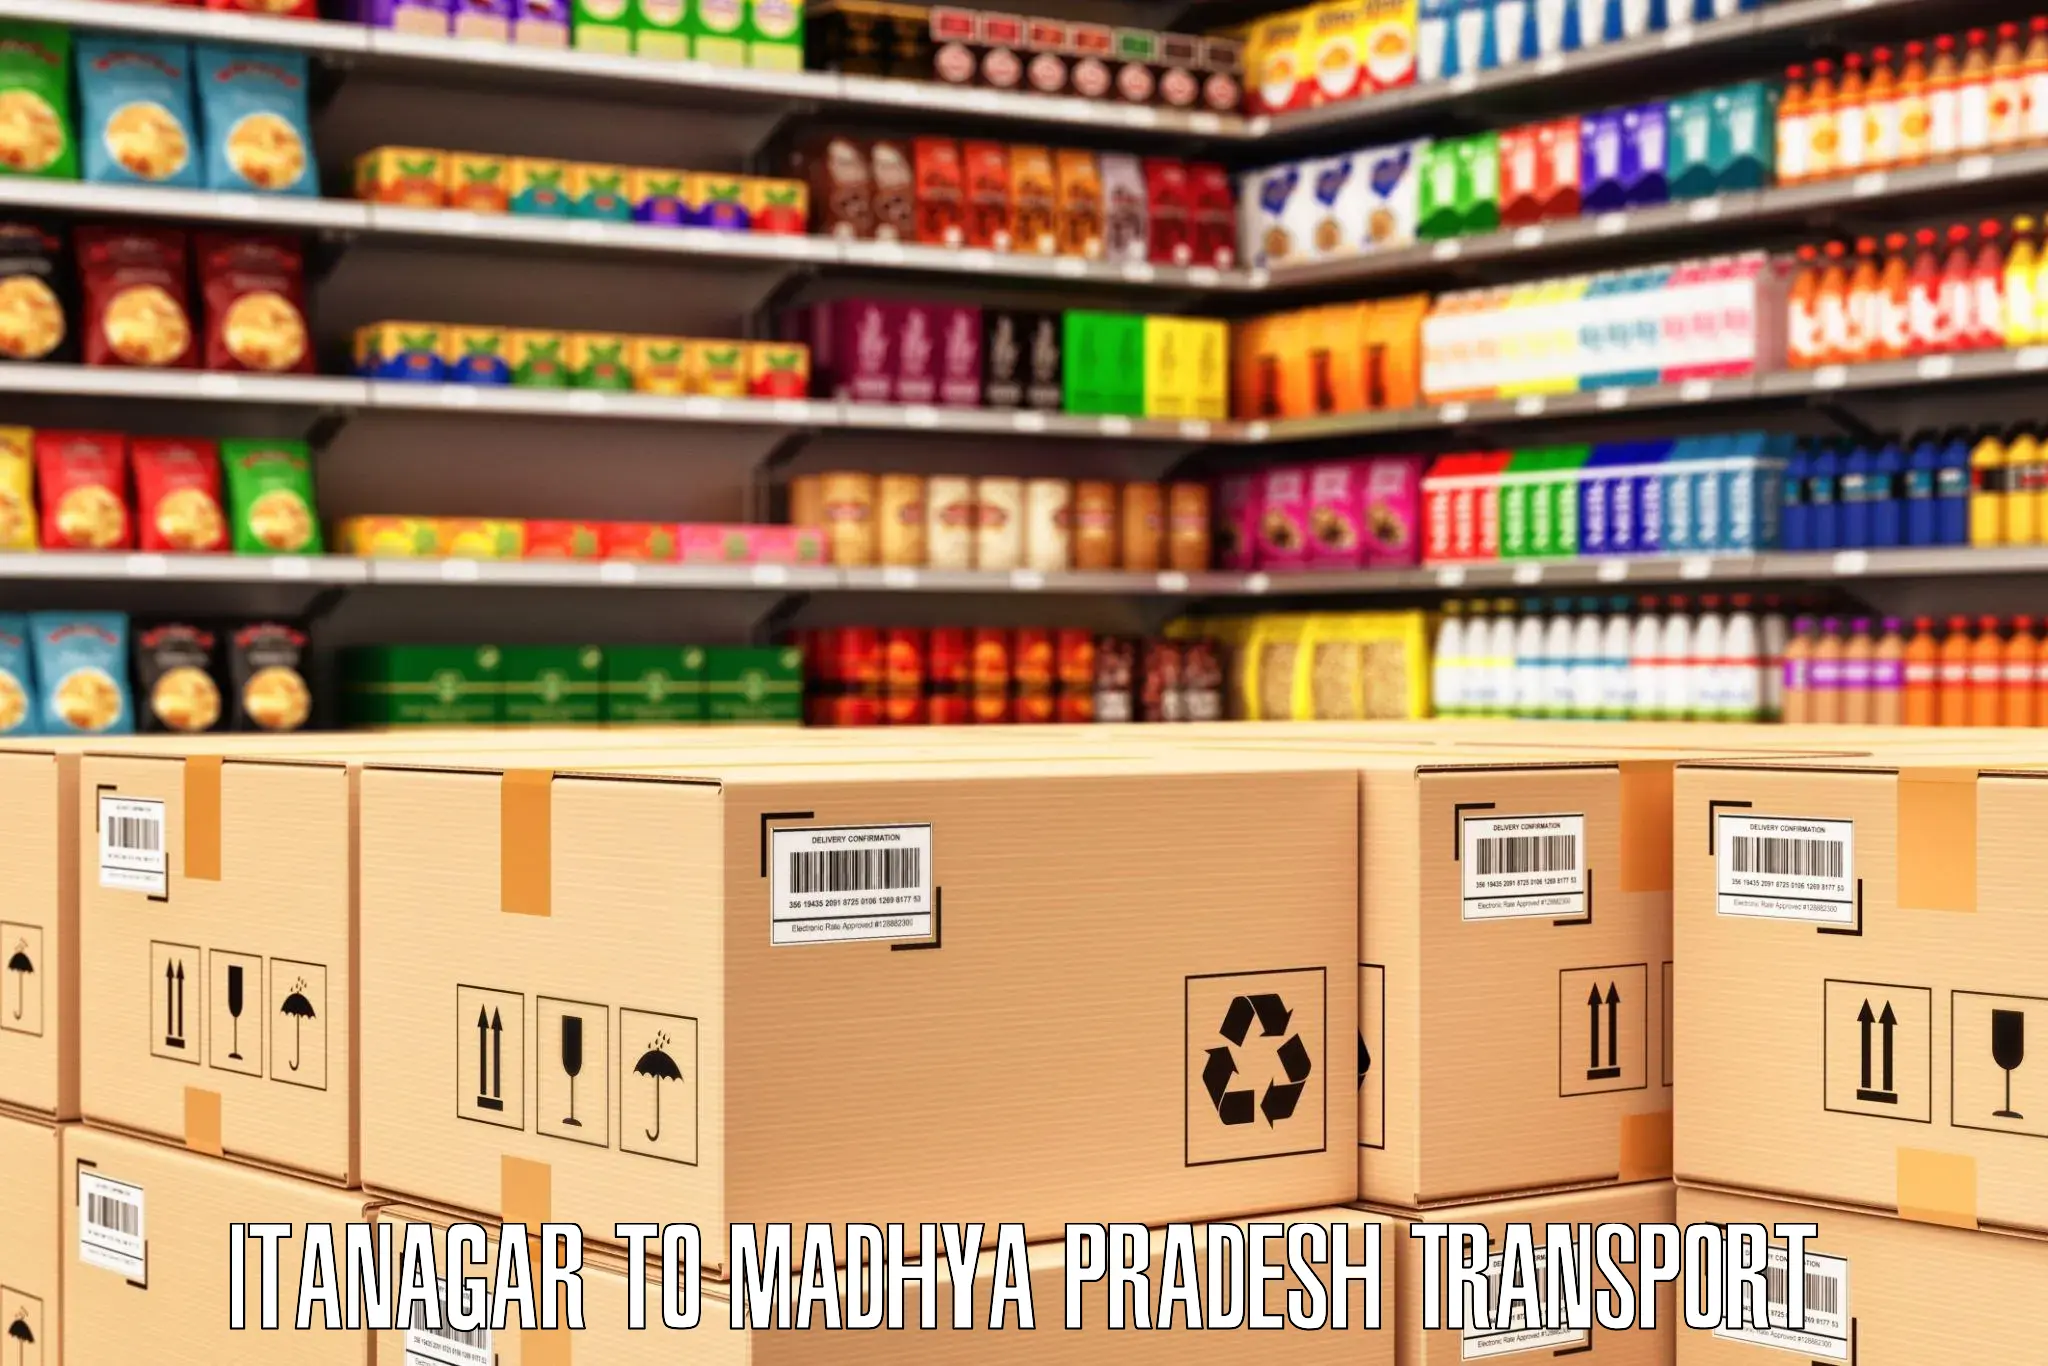 Vehicle parcel service Itanagar to Budaganj